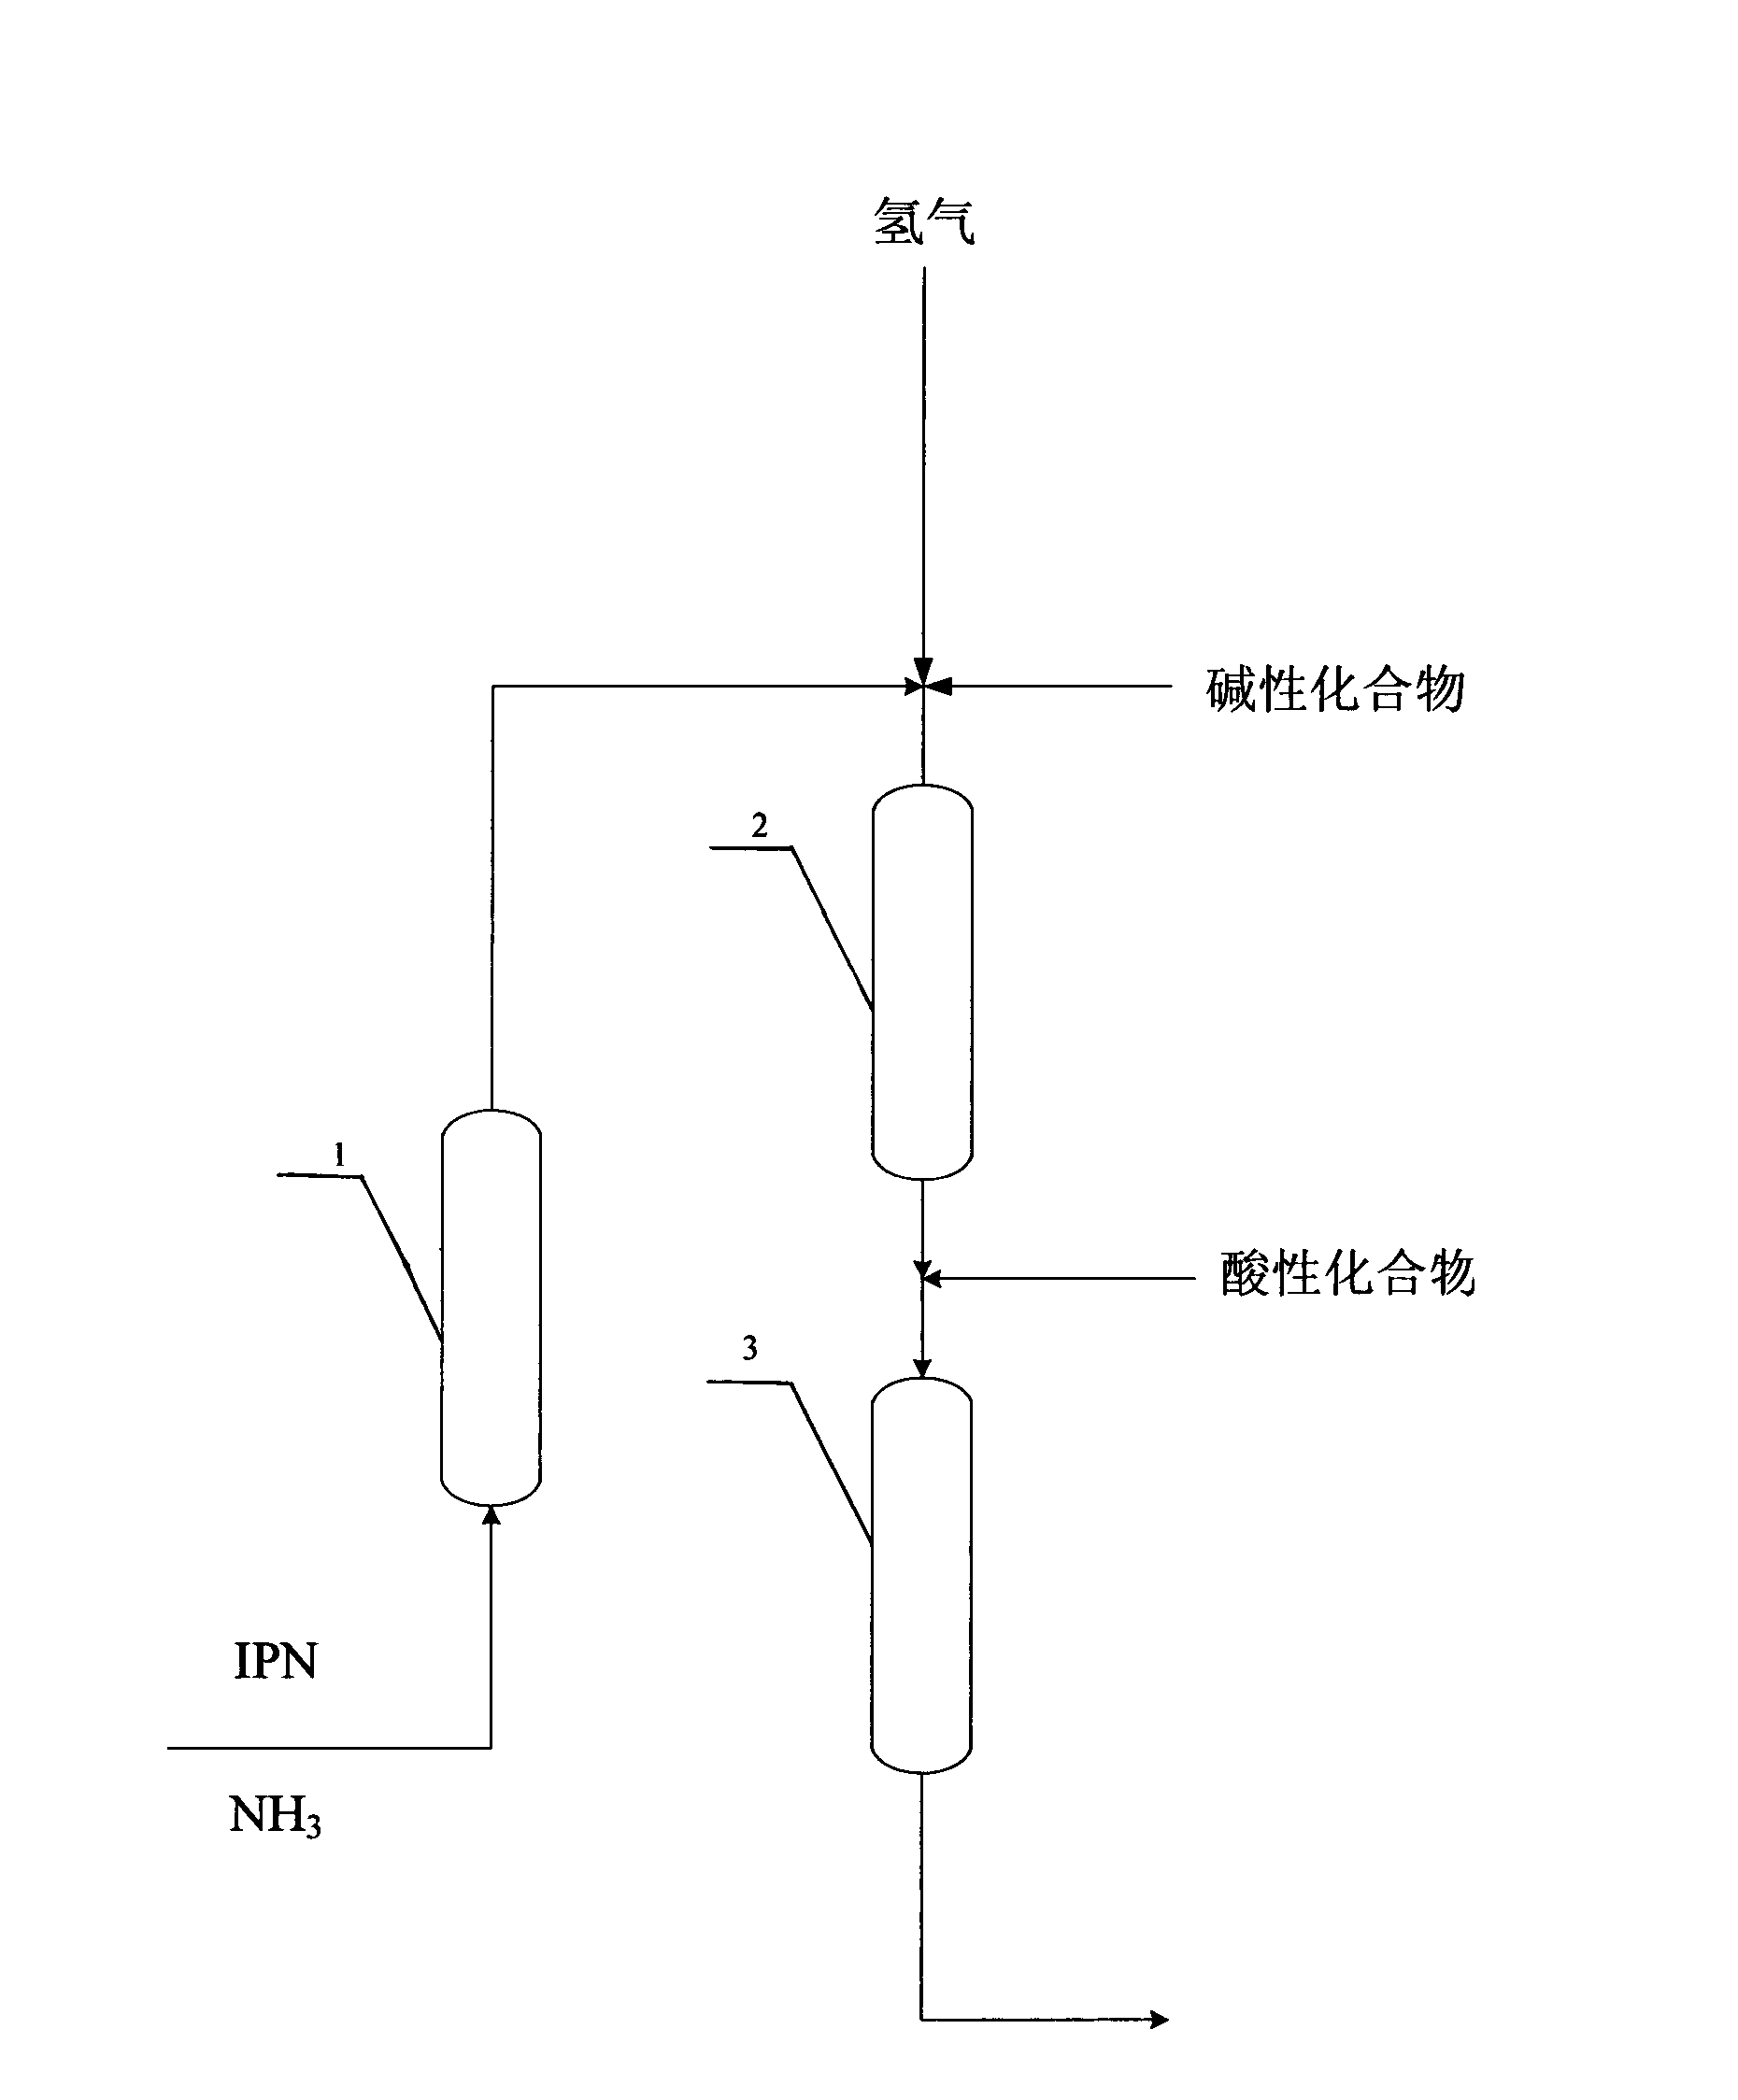 Preparation method of 3-aminomethyl-3,5,5-trimethylcyclohexylamine